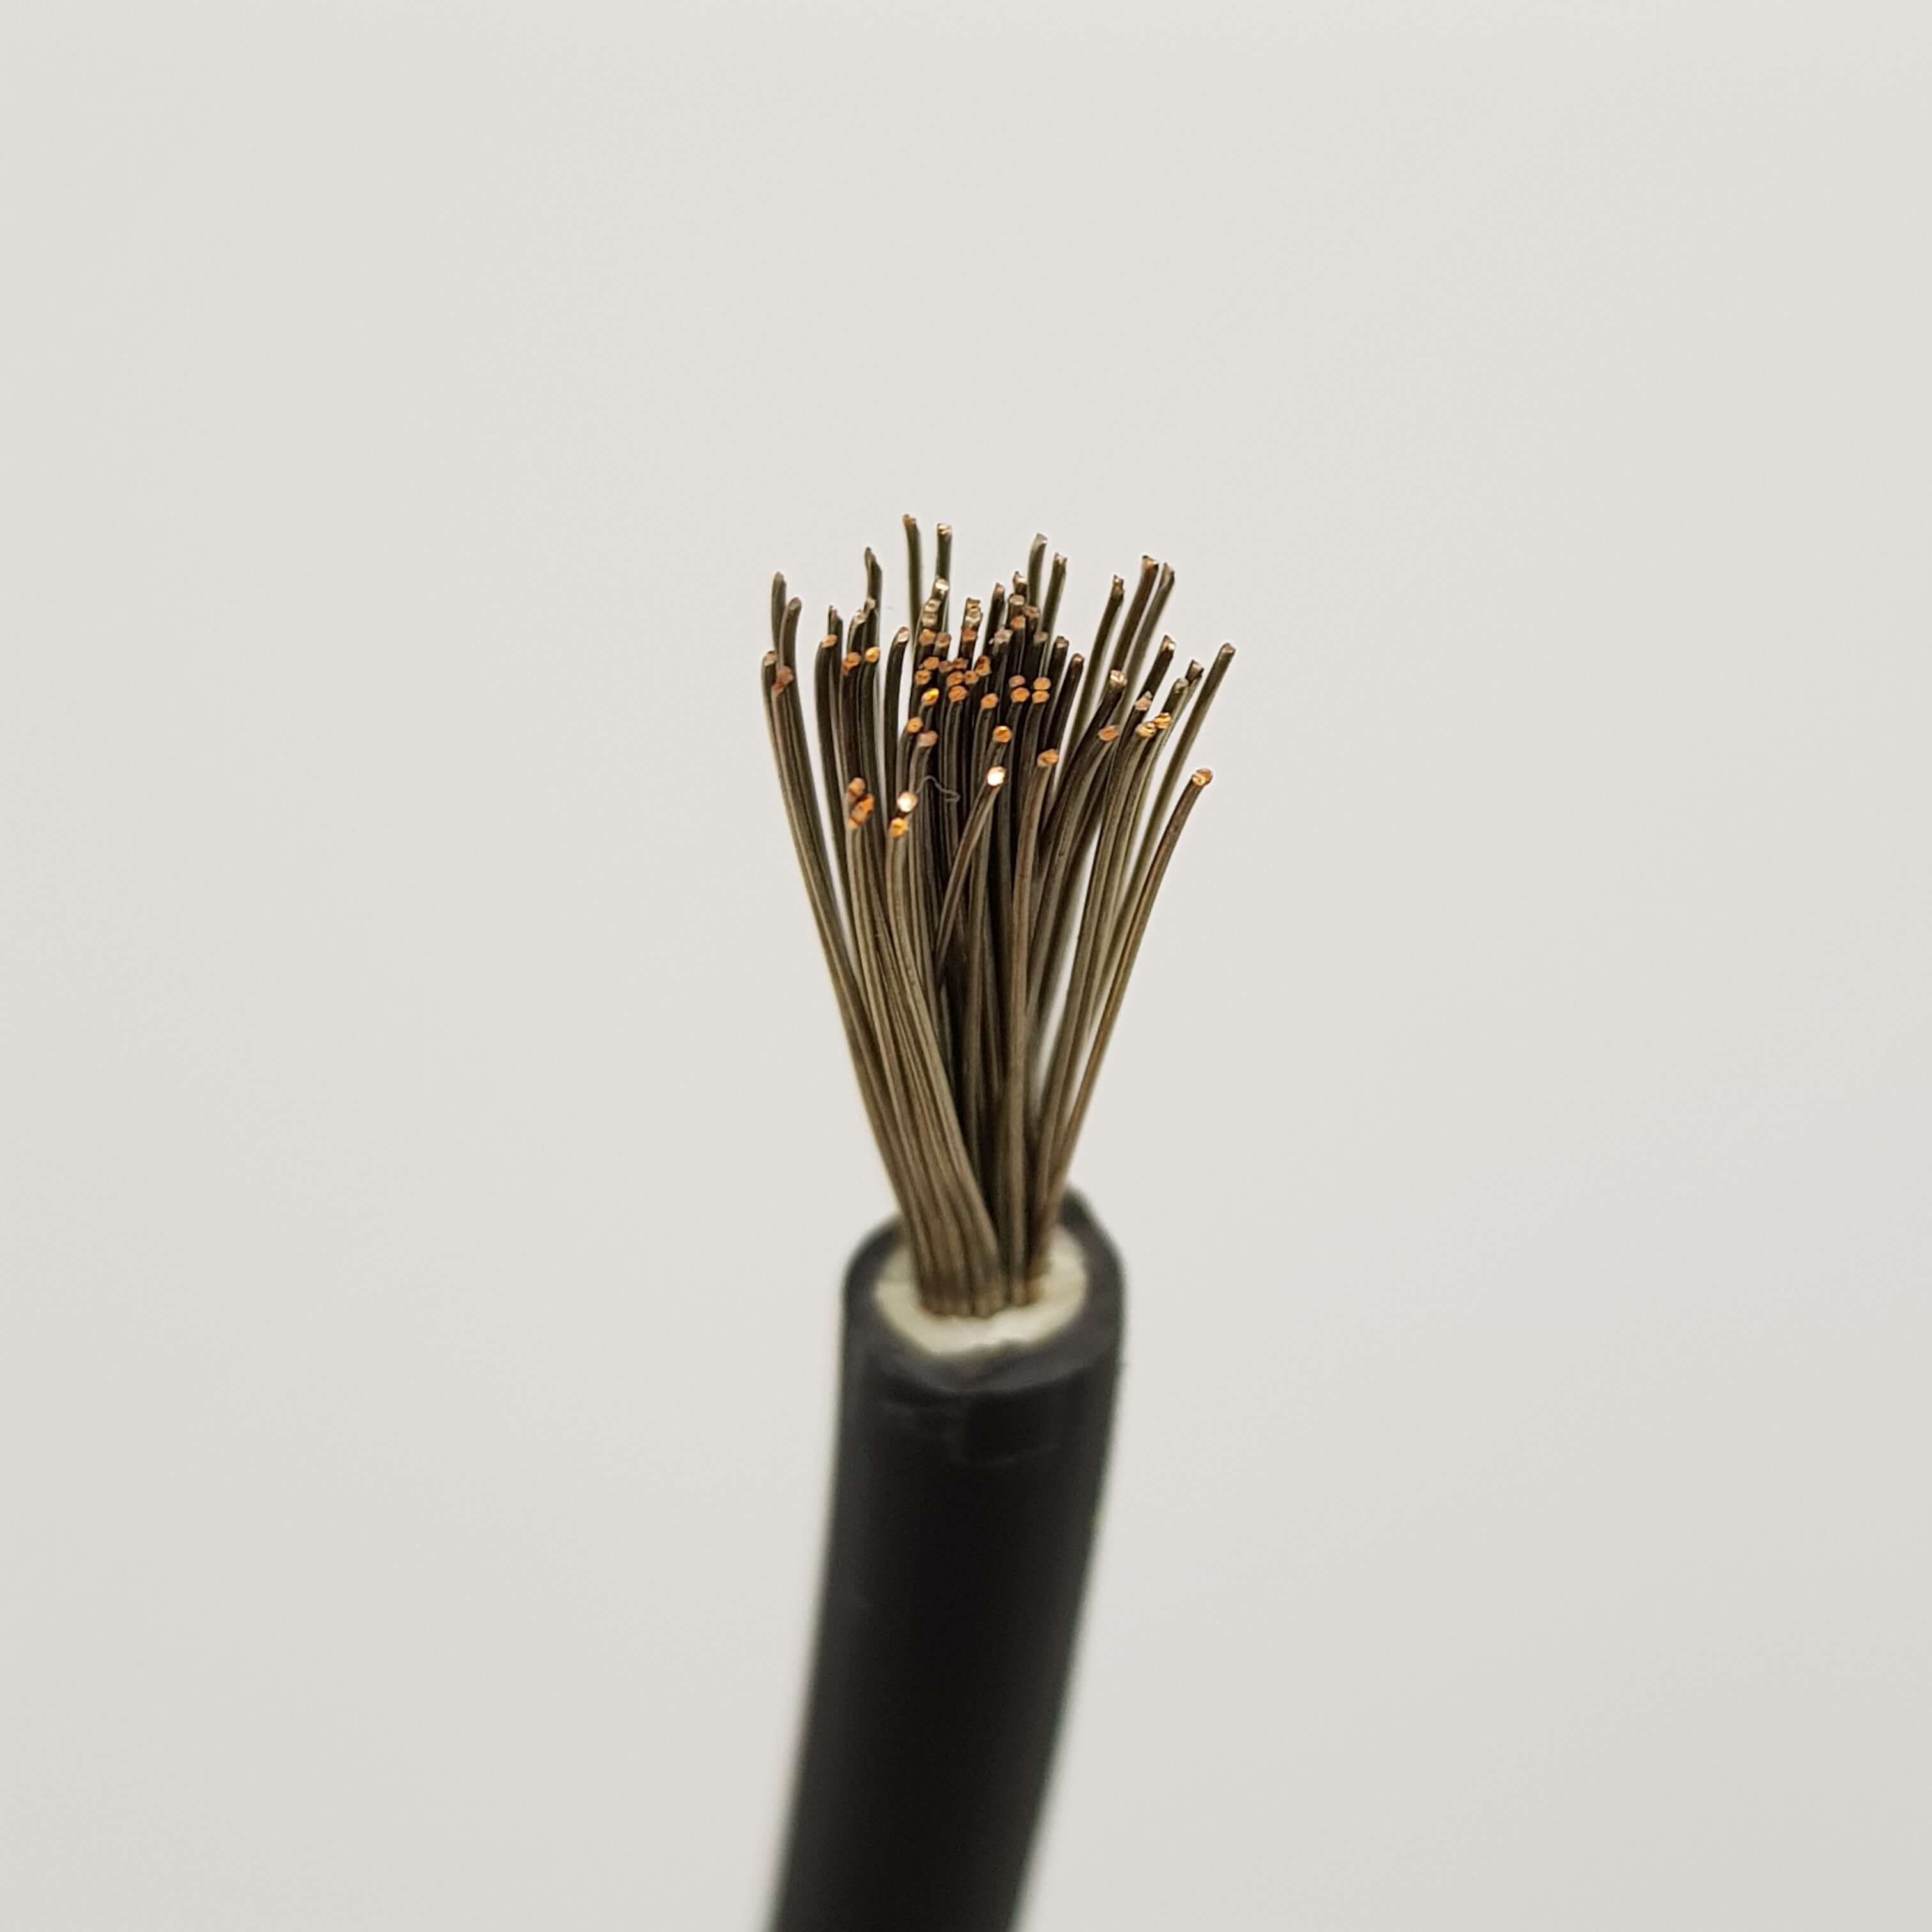 Jual Kabel Listrik Terlengkap dan Berkualitas TOPSOLAR 1 X 6 mm2 Top Cable